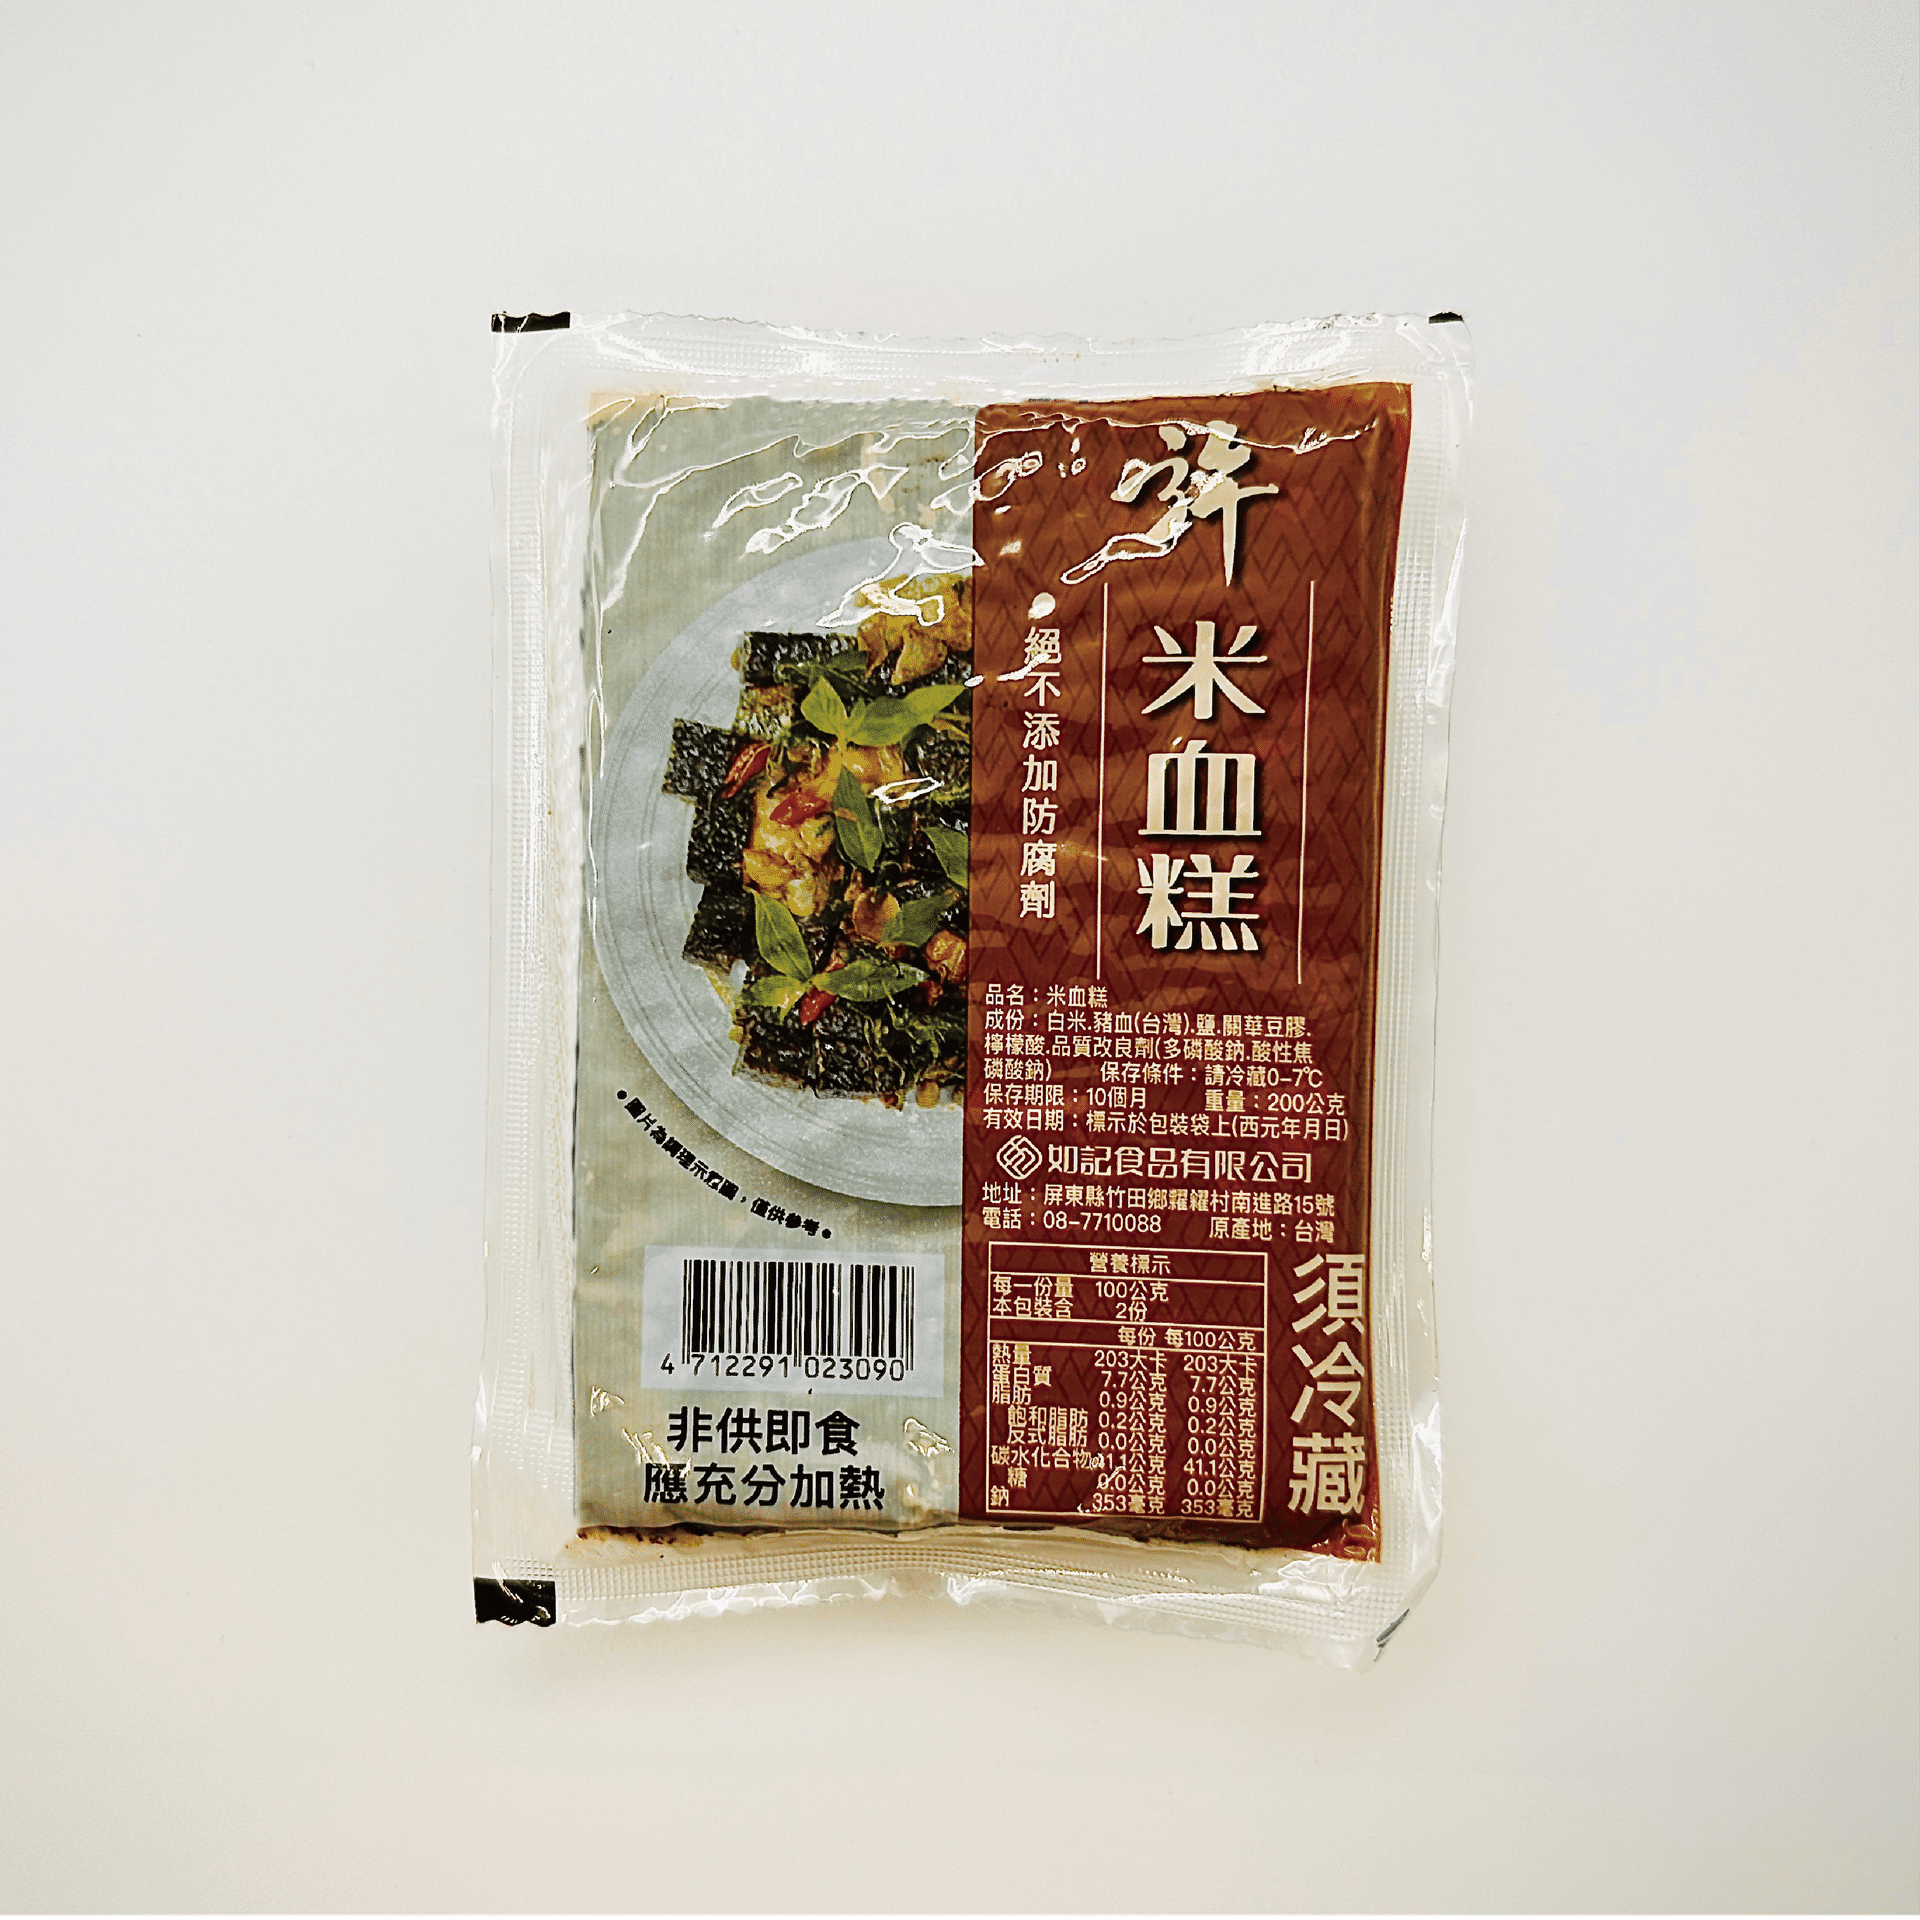 米血糕,火鍋.滷味,關東煮,台灣小吃